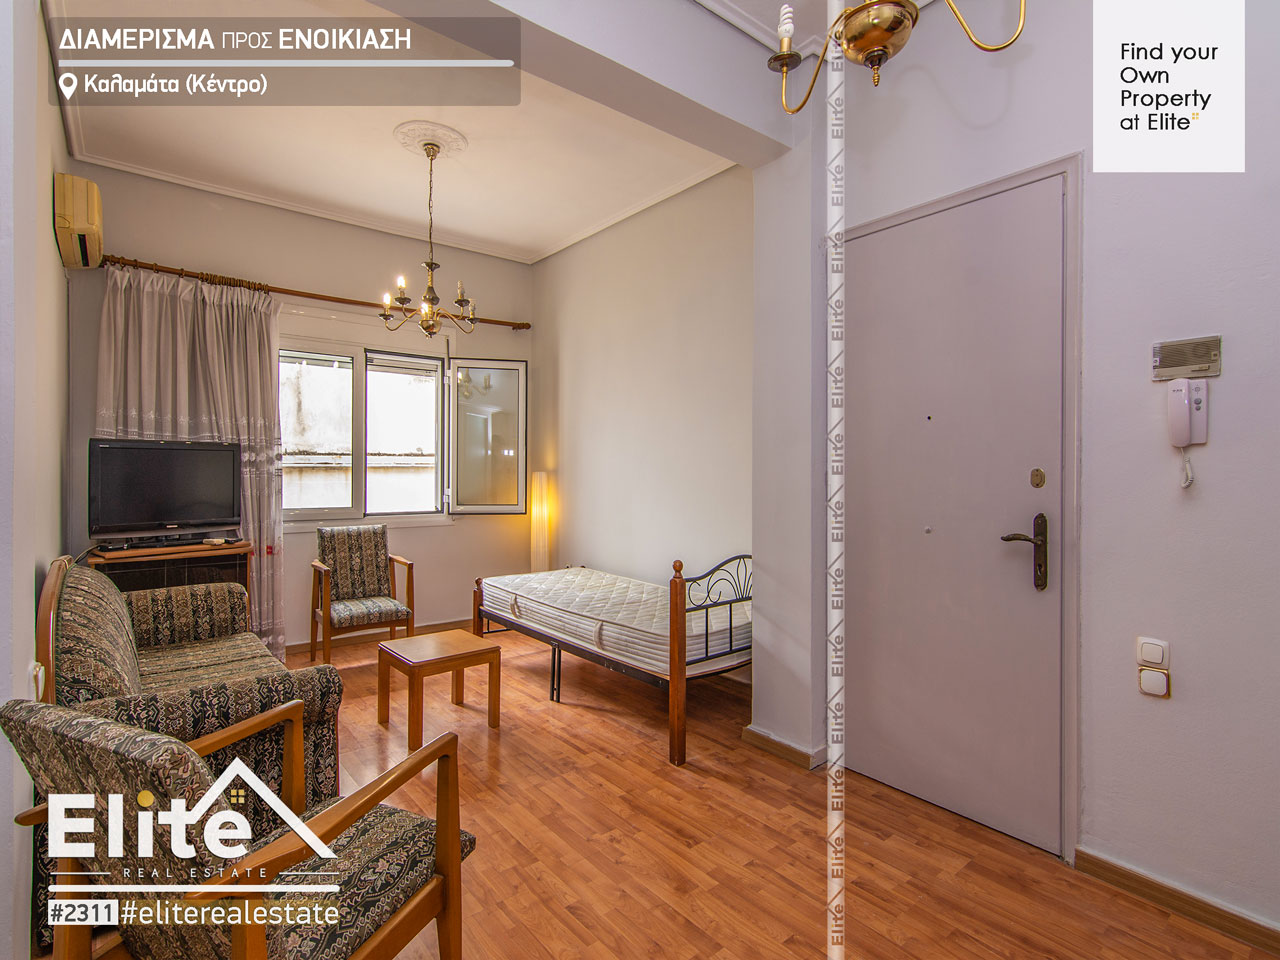 Ενοικίαση δυάρι διαμέρισμα Καλαμάτα #2311 | ELITE REAL ESTATE